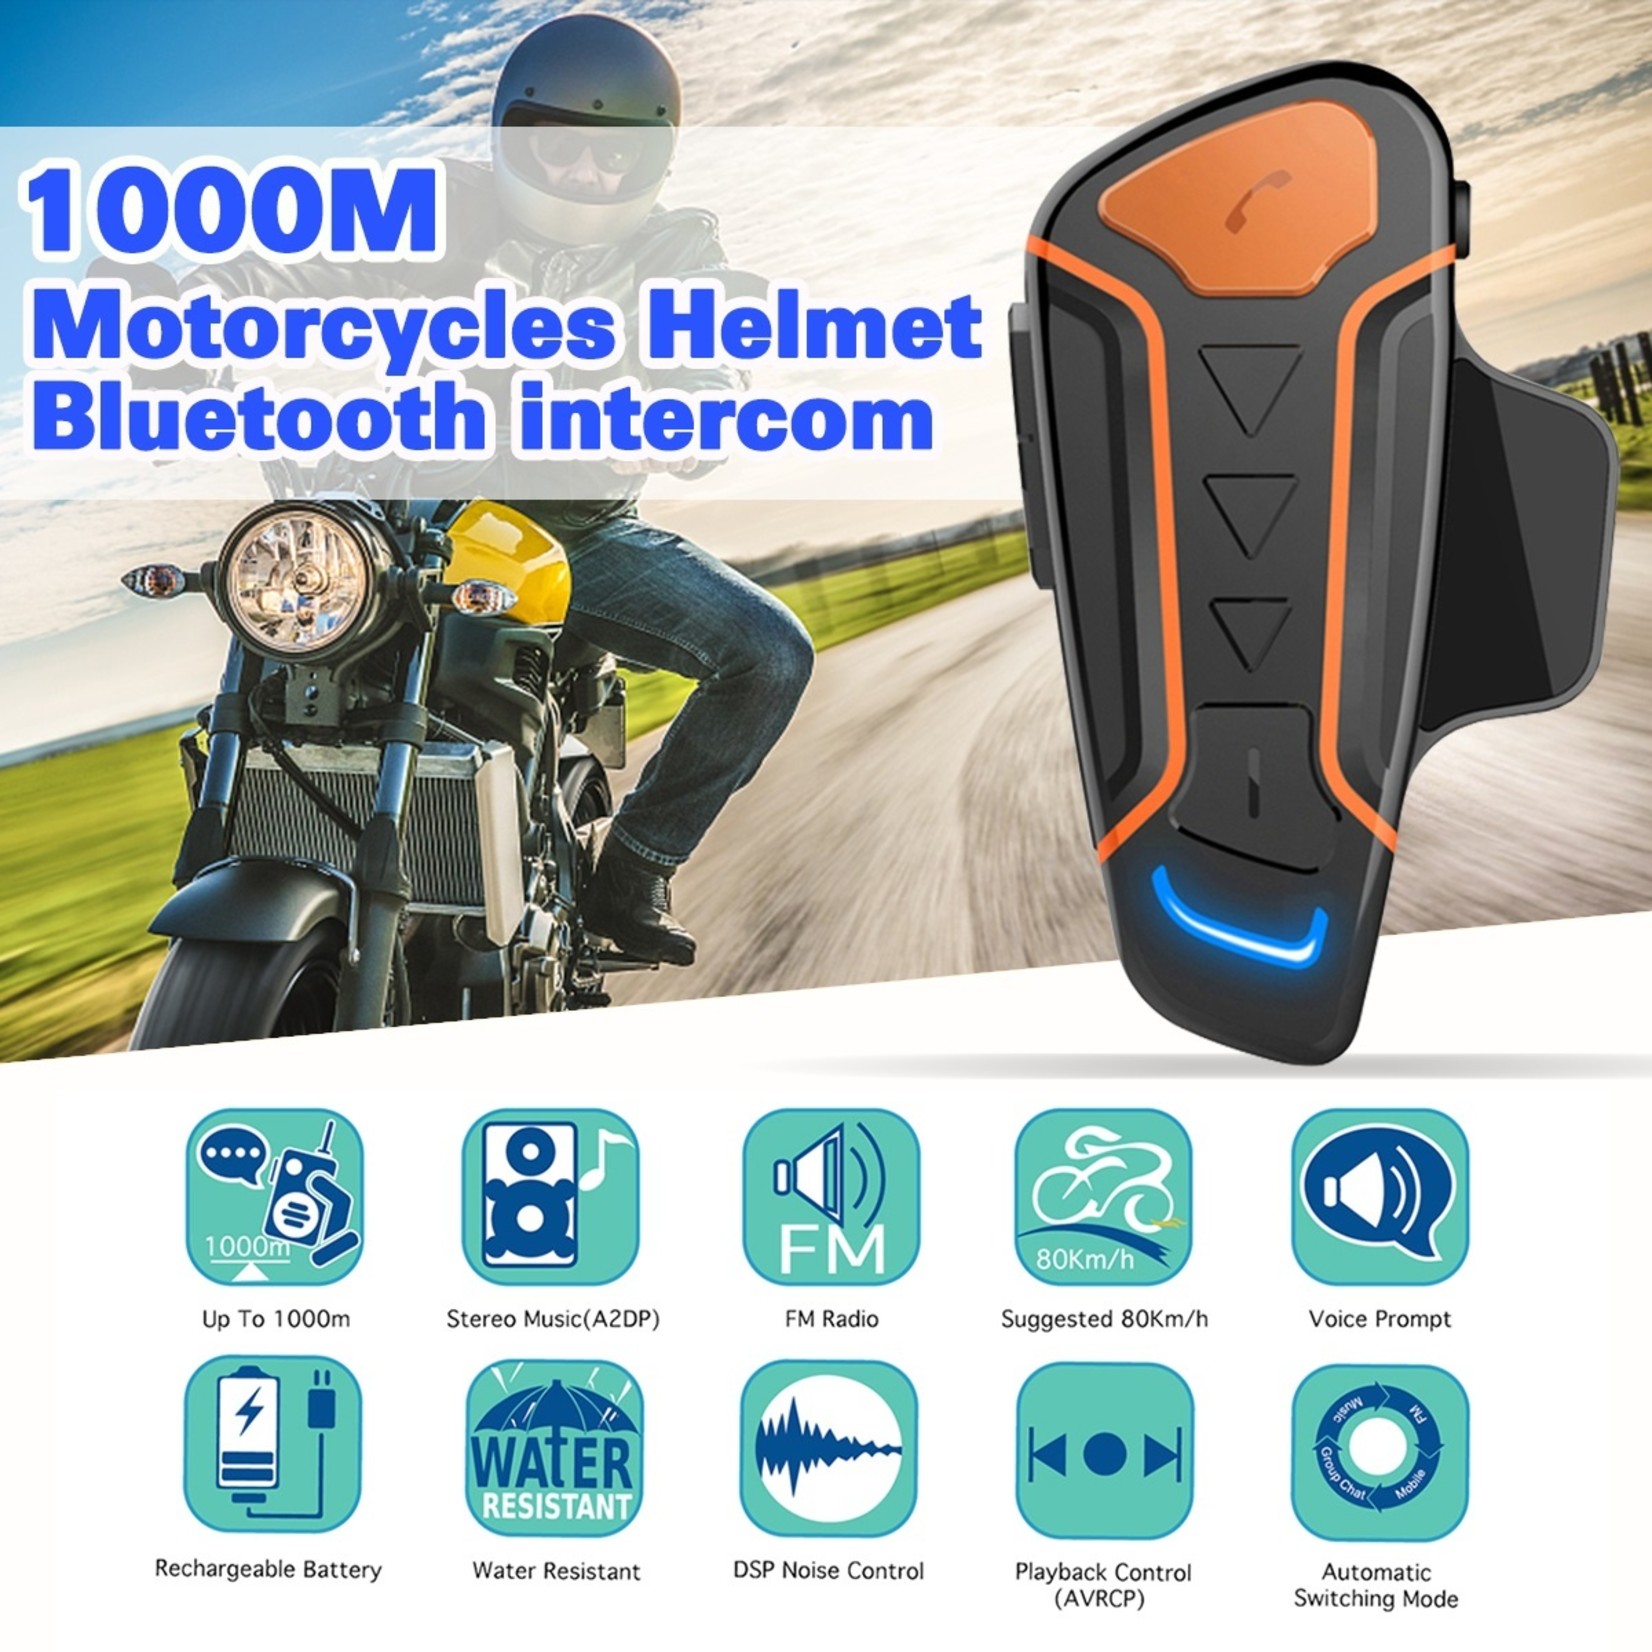 HE Products Dubbele zet WT003 Bluetooth-communicatiesysteem voor motorfietsen.